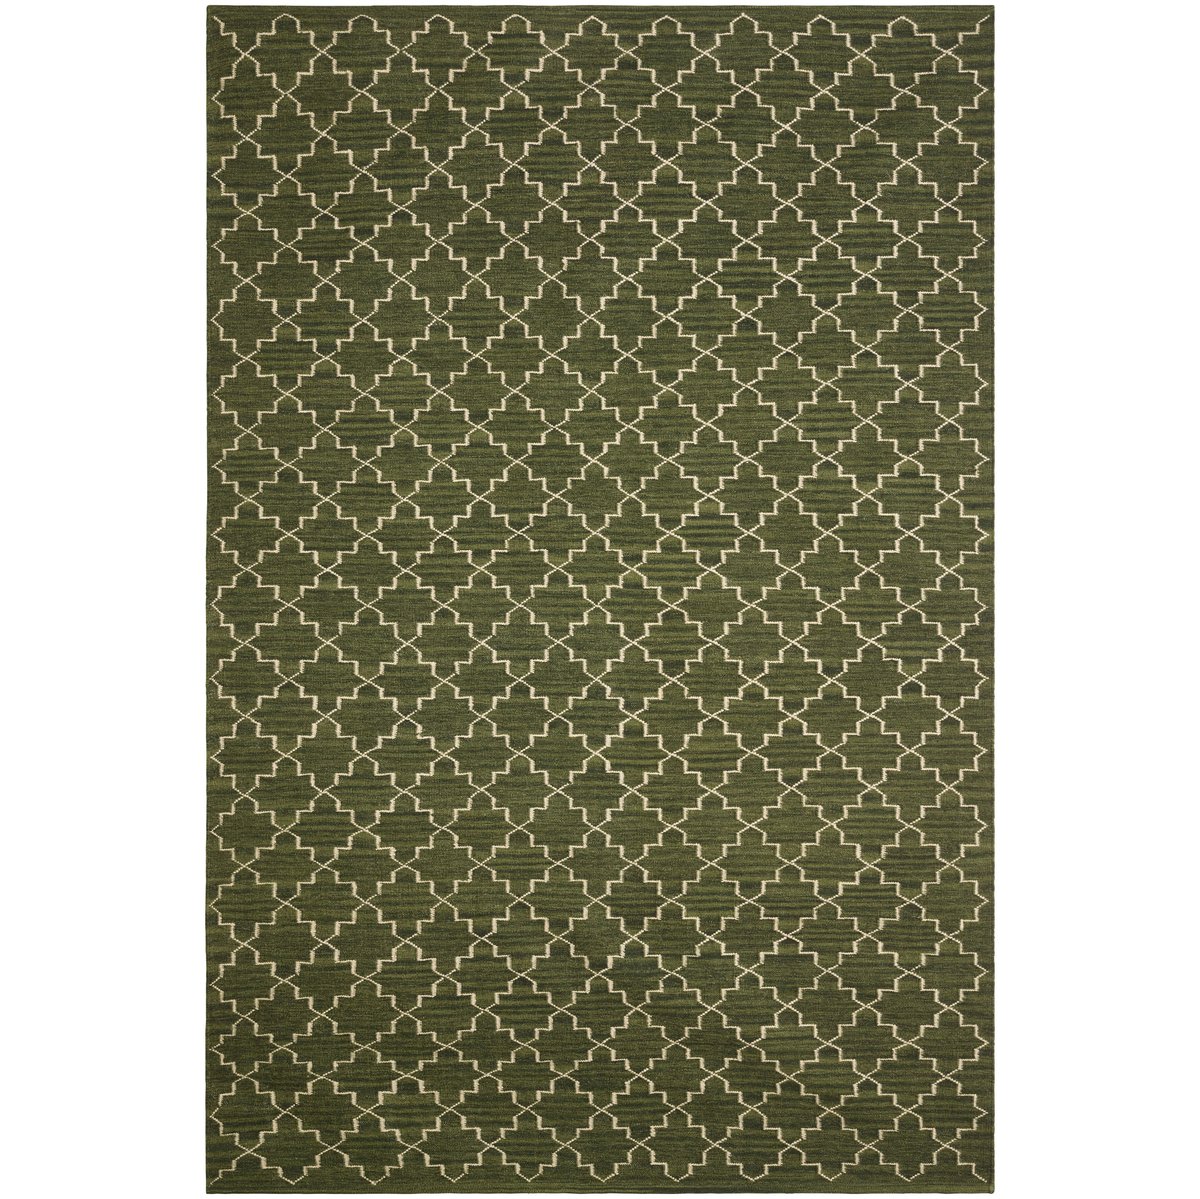 Bilde av Chhatwal & Jonsson New Geometric gulvteppe 234x323 cm Green melange-off white